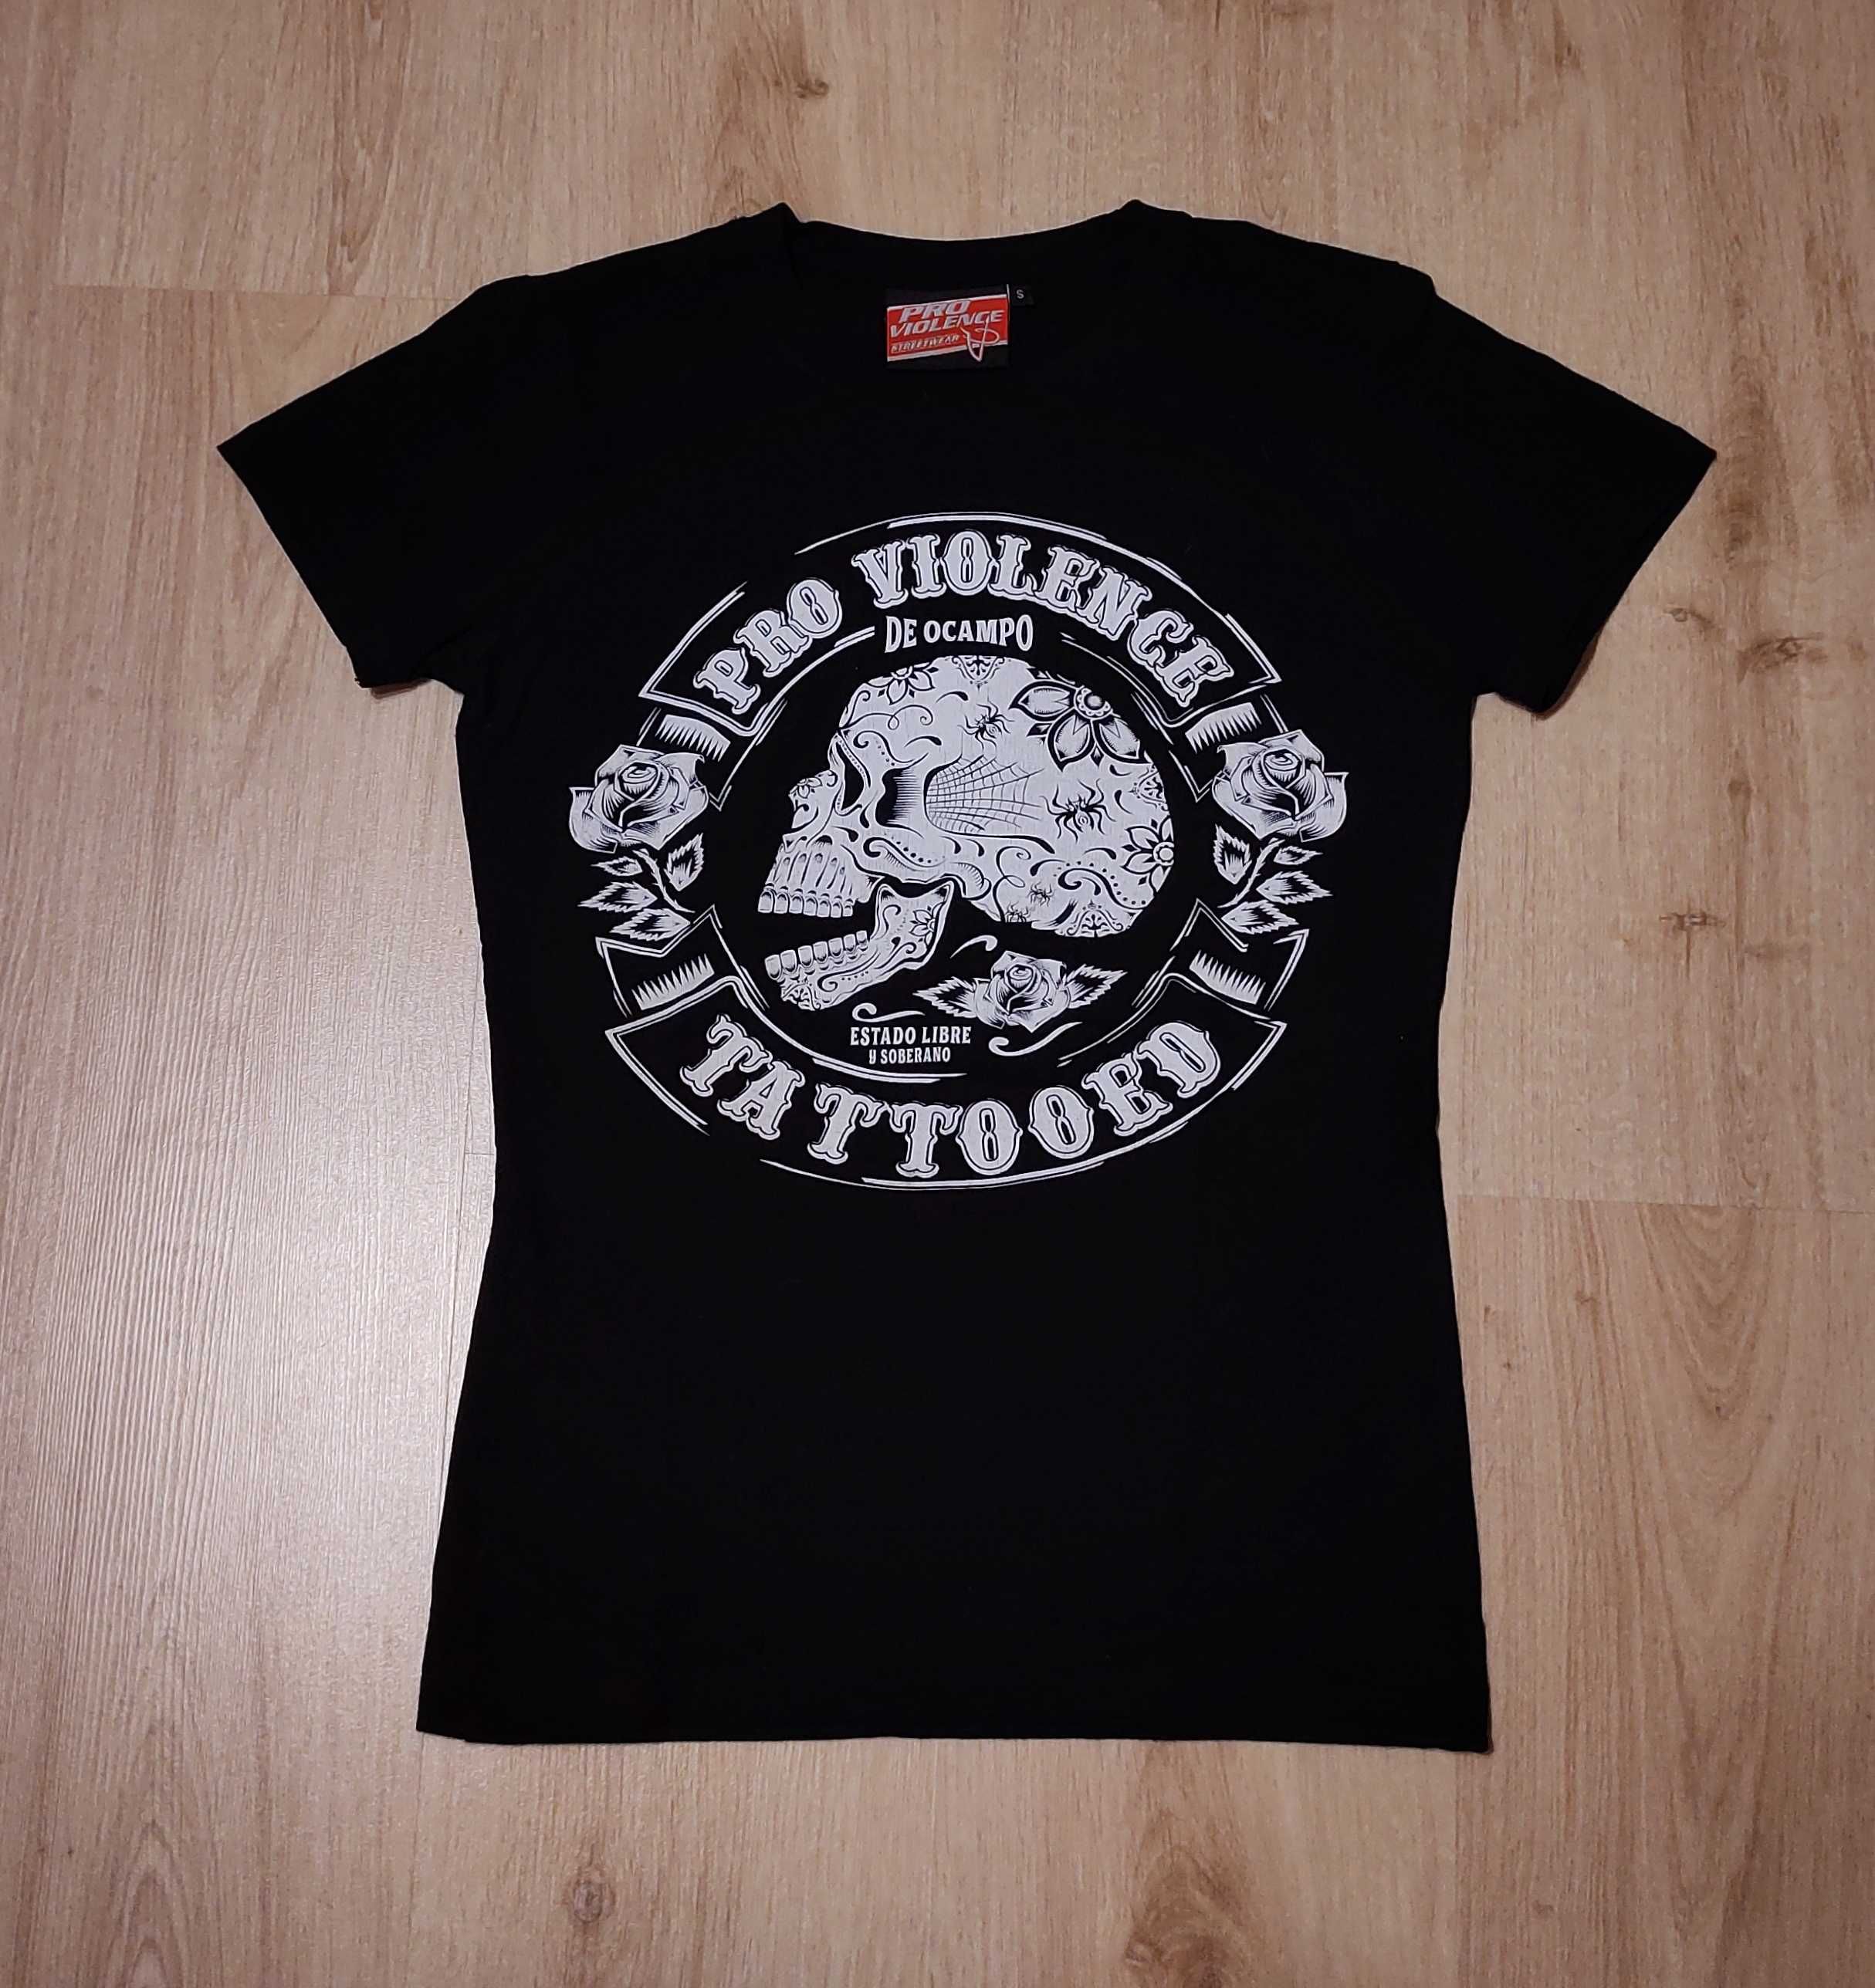 T-shirt, czarna koszulka z motywem TATTOO, rozmiar S, czaszka, tatuaż.